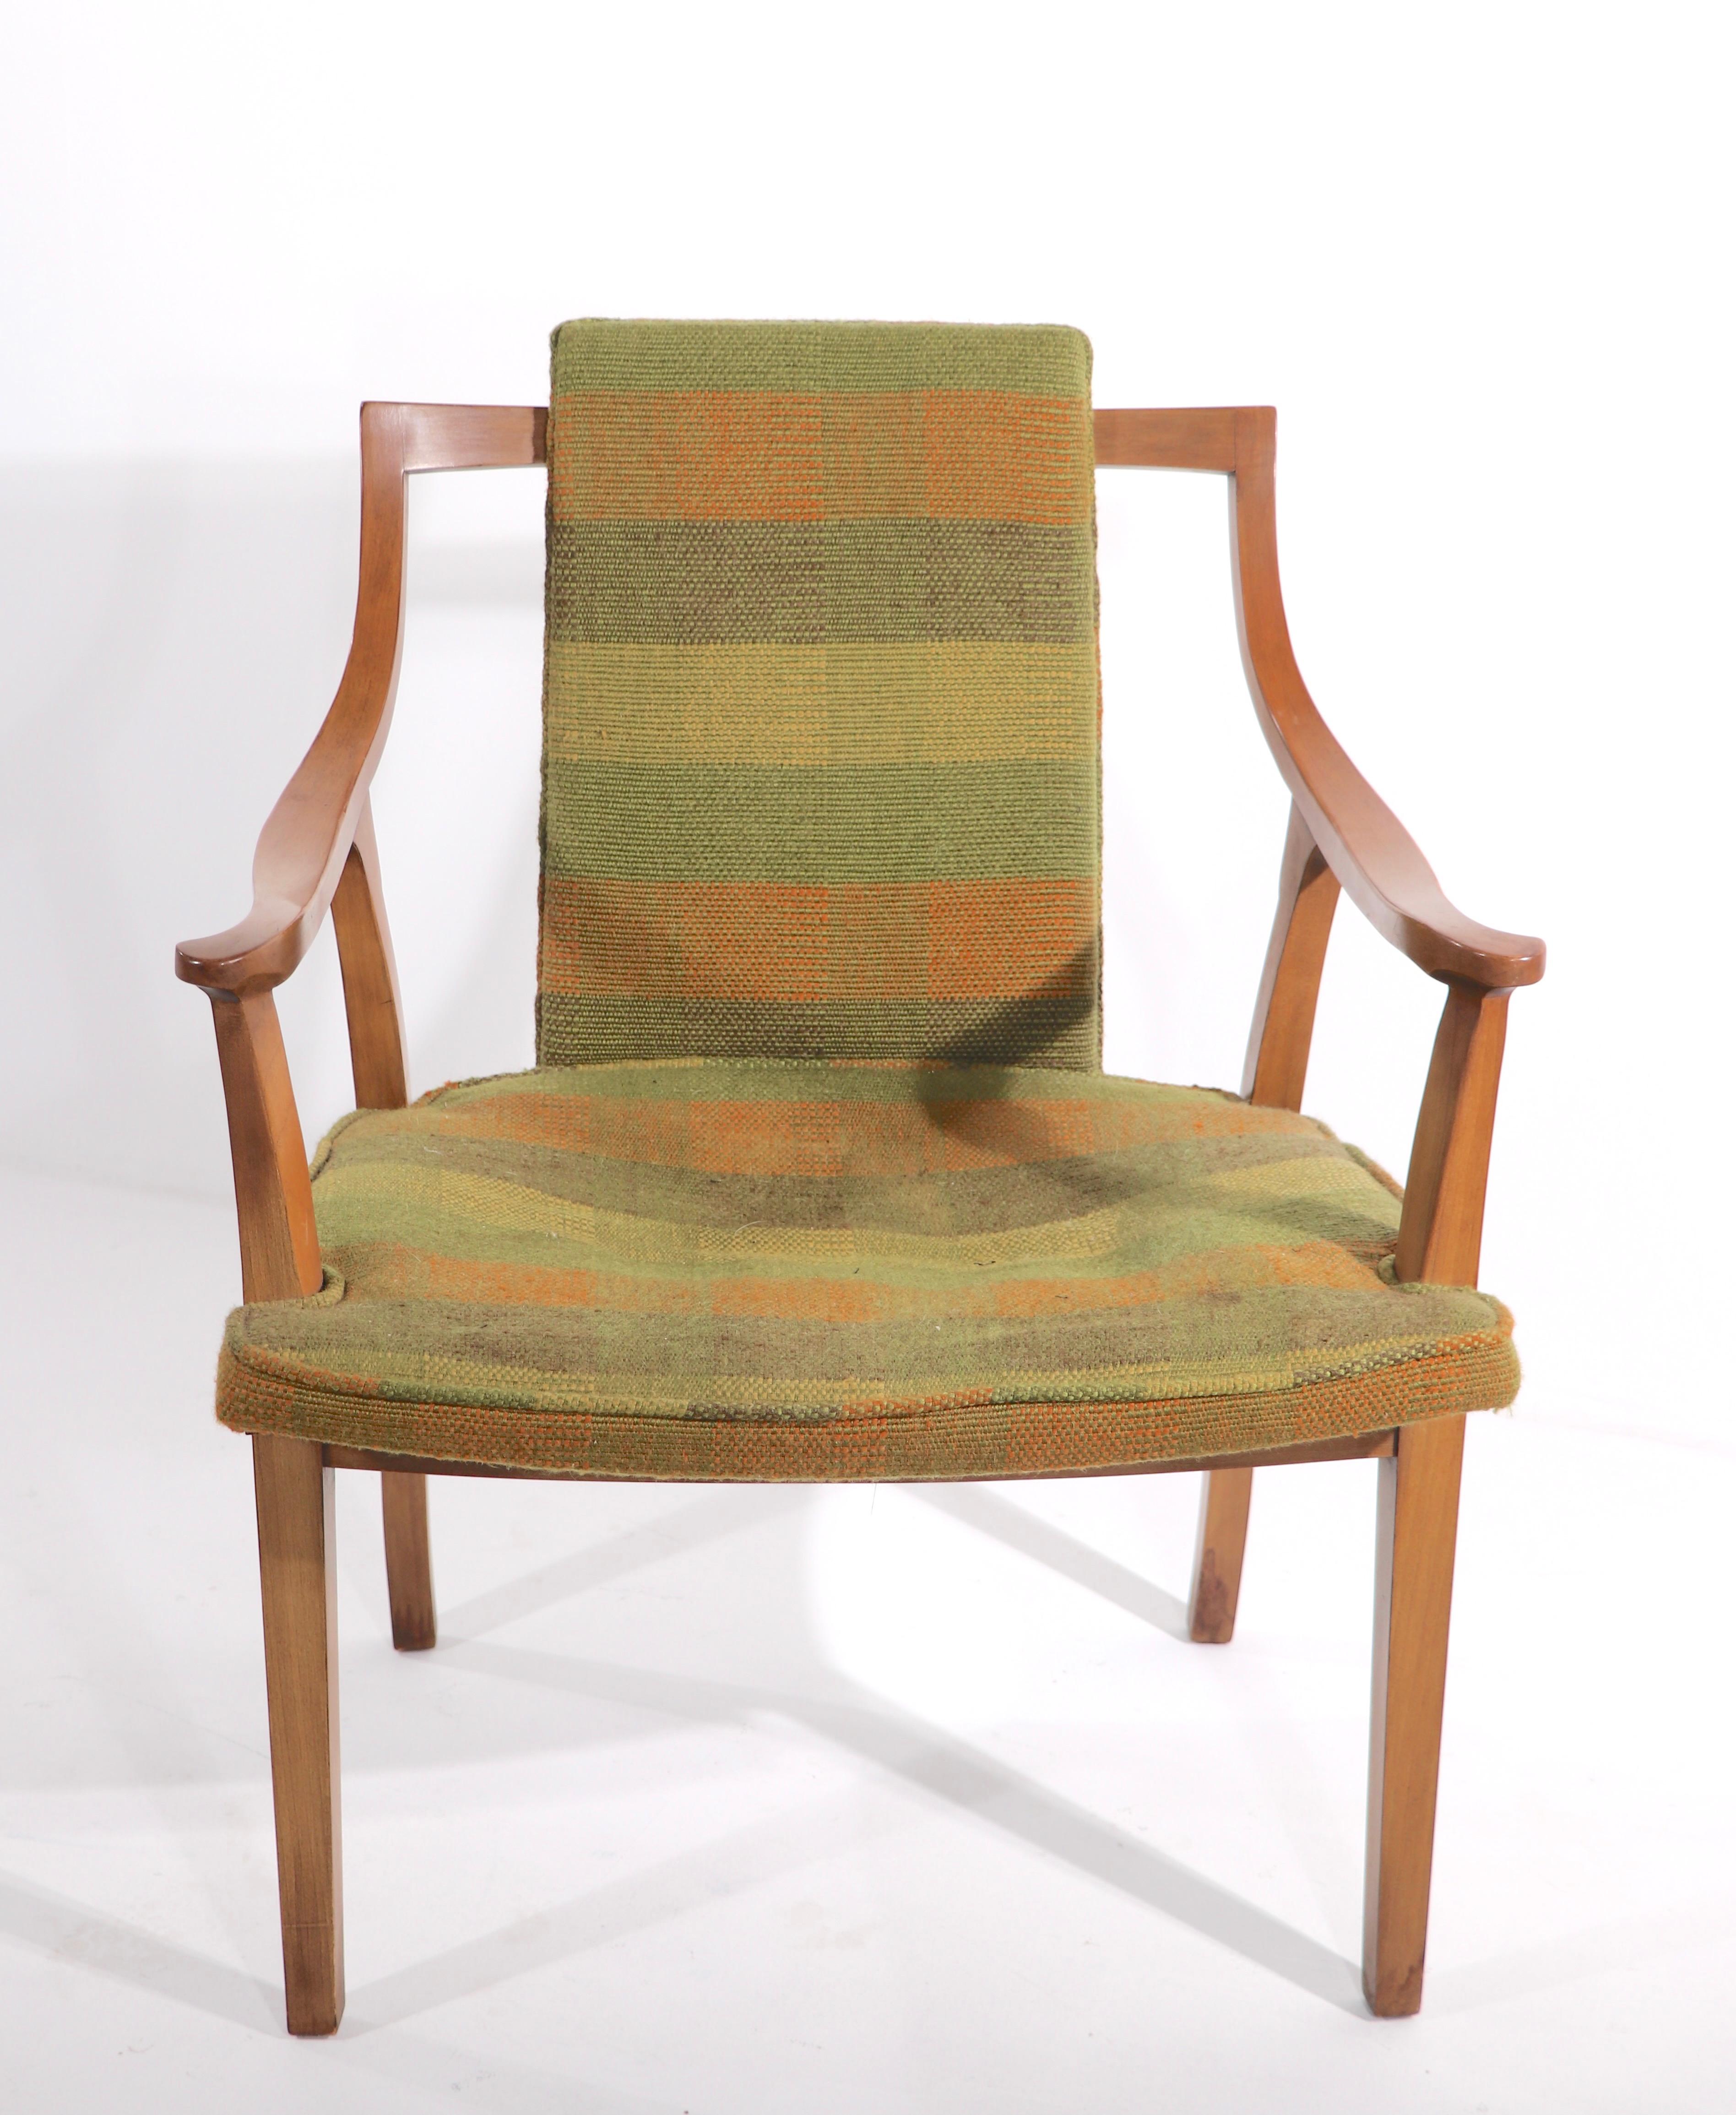 Paire chic et élégante de fauteuils de salon à bras ouverts, ou de fauteuils à tirer, par John Widdicomb. Ces chaises sophistiquées sont dotées de cadres sinueux en bois sculpté, qui soutiennent une assise et un dossier rembourrés. Les chaises sont